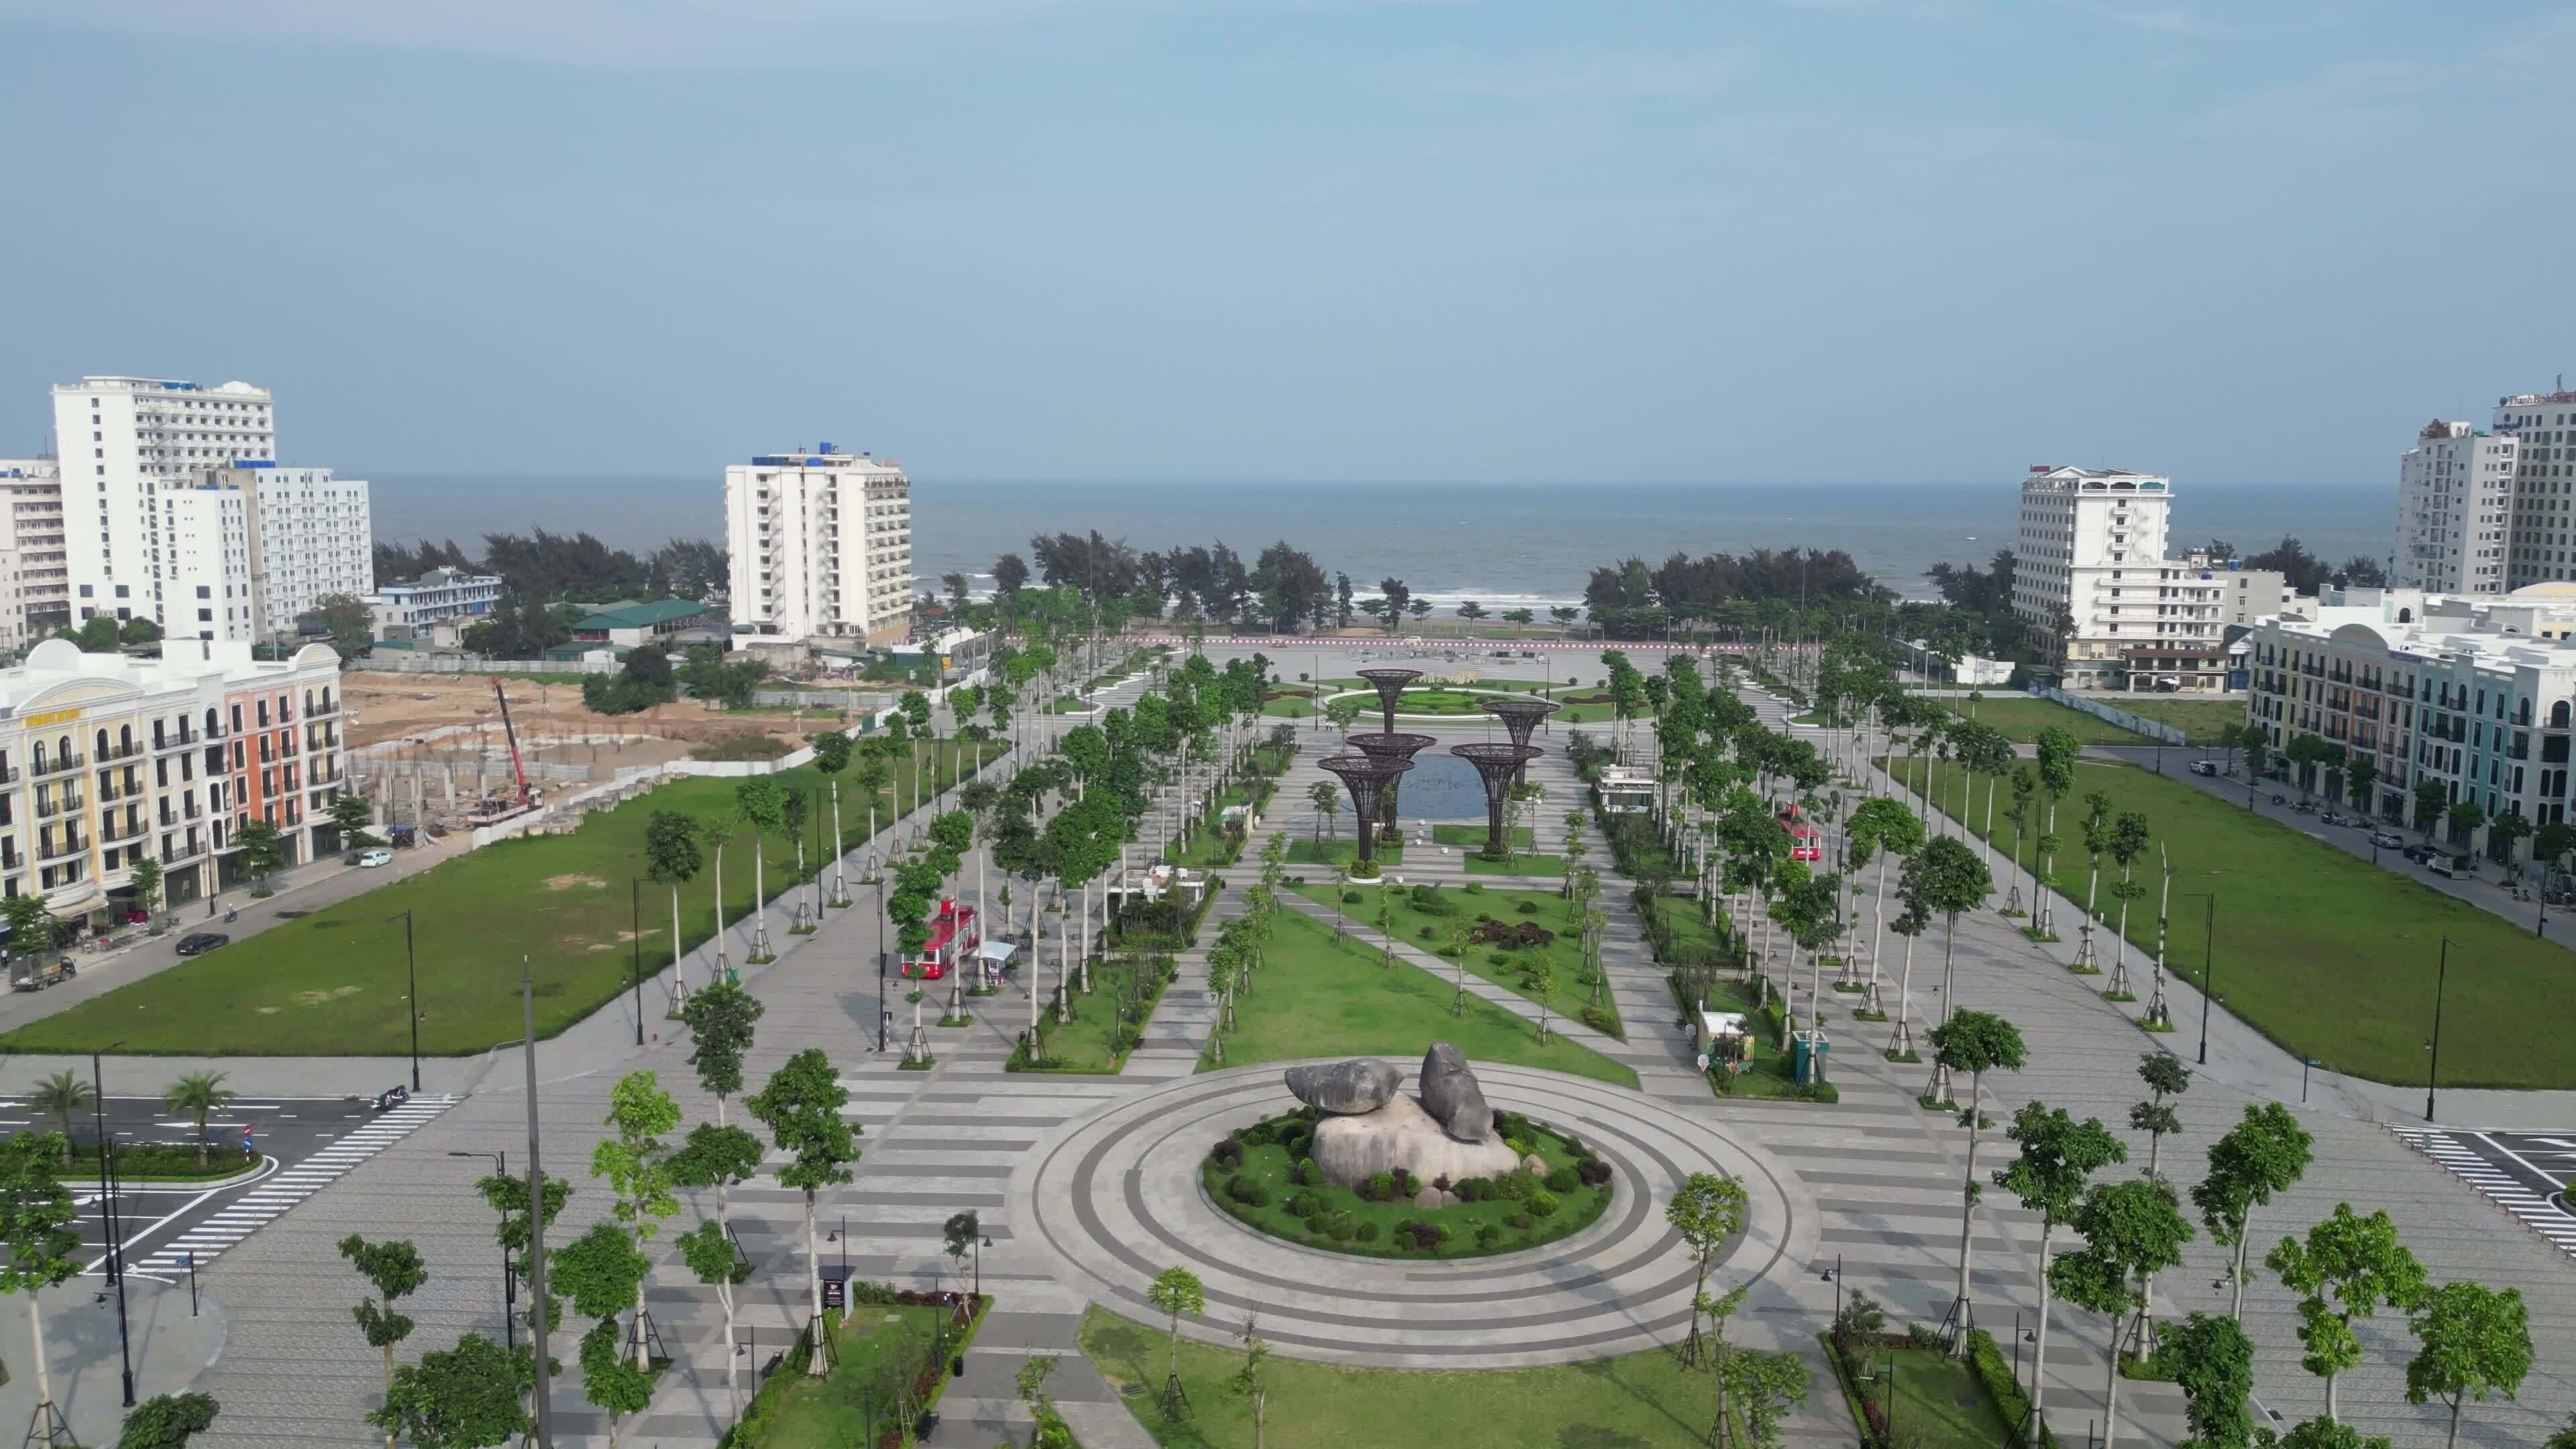 Quảng trường biển lớn nhất Thanh Hóa sắp khánh thành - ảnh 11